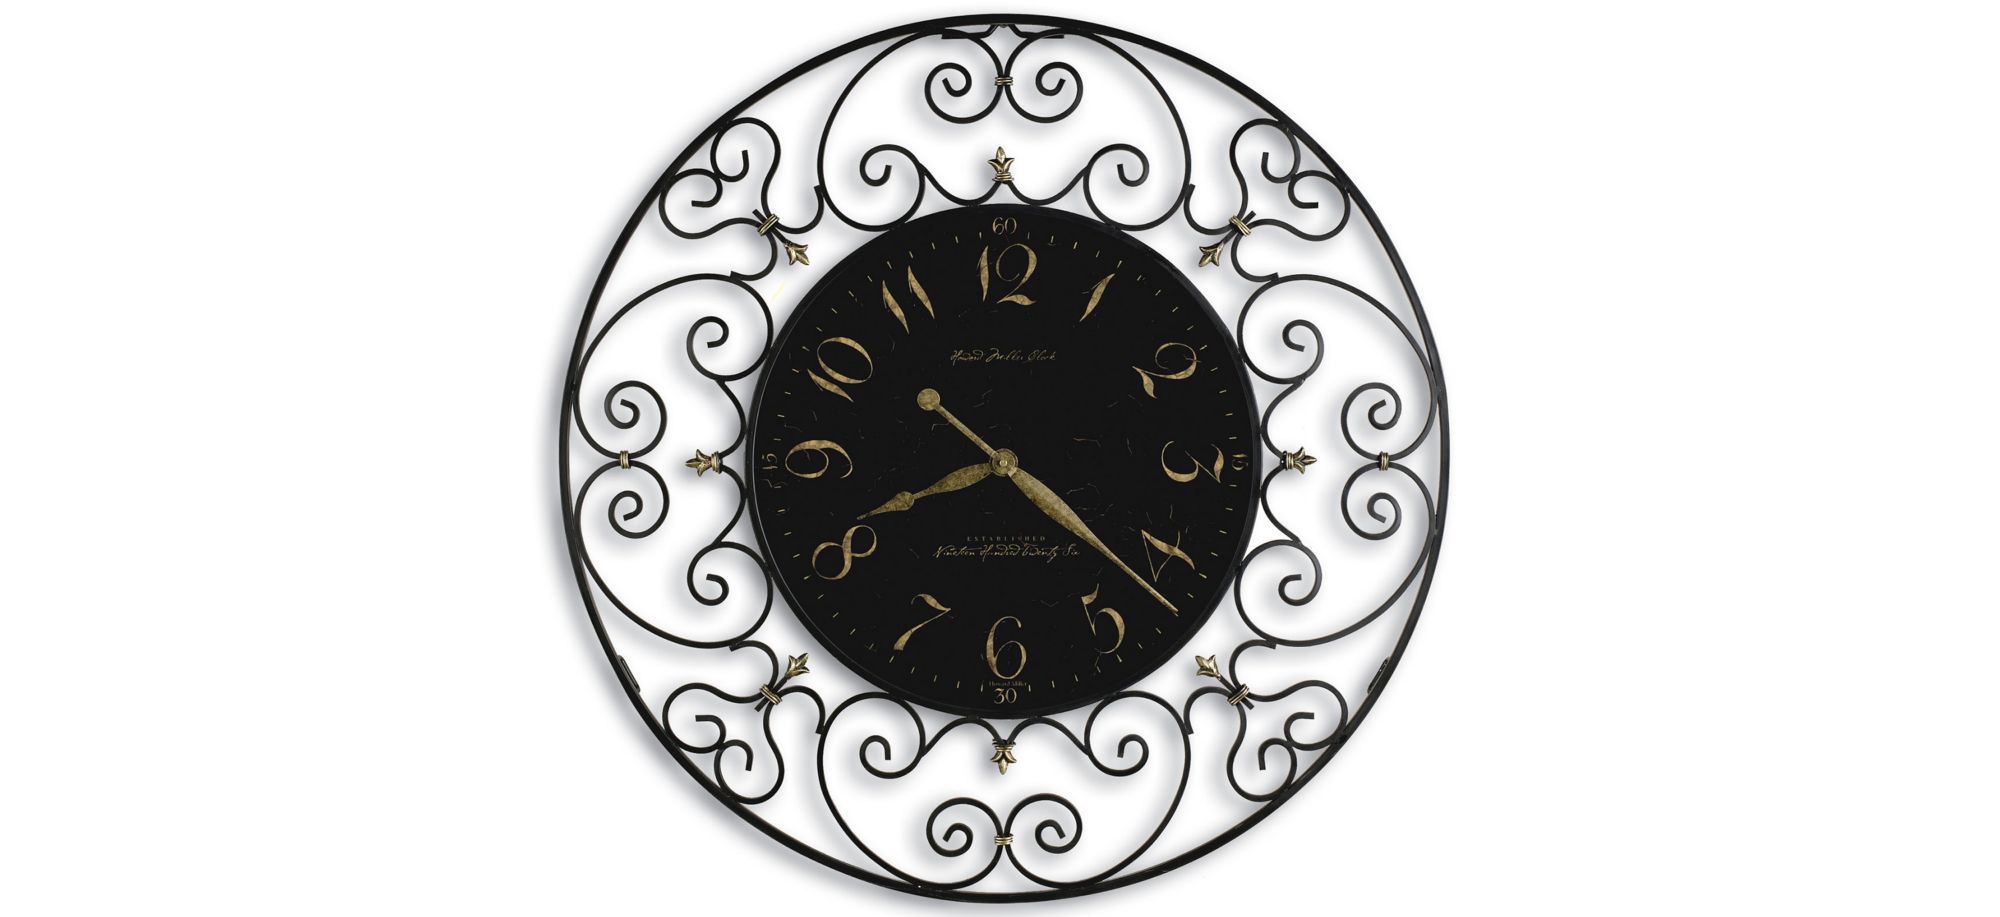 Joline Wall Clock in Black by Howard Miller